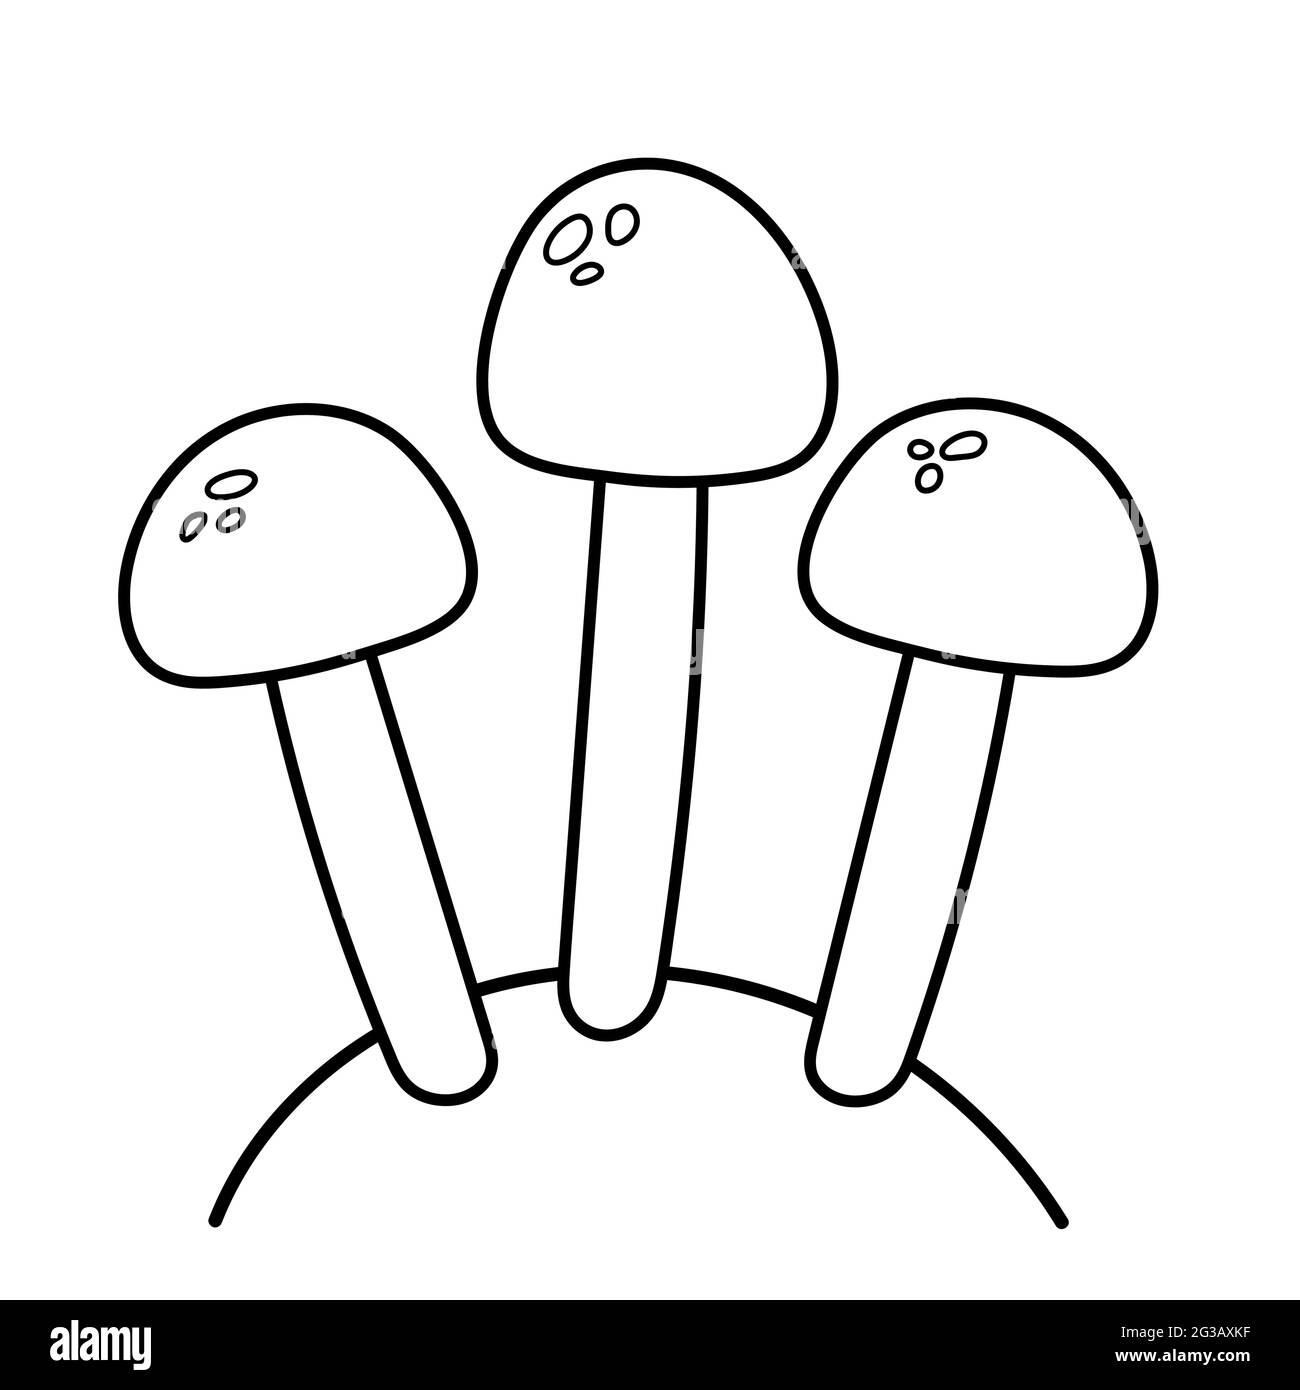 Funghi commestibili. Illustrazione vettoriale in stile doodle. Illustrazione Vettoriale